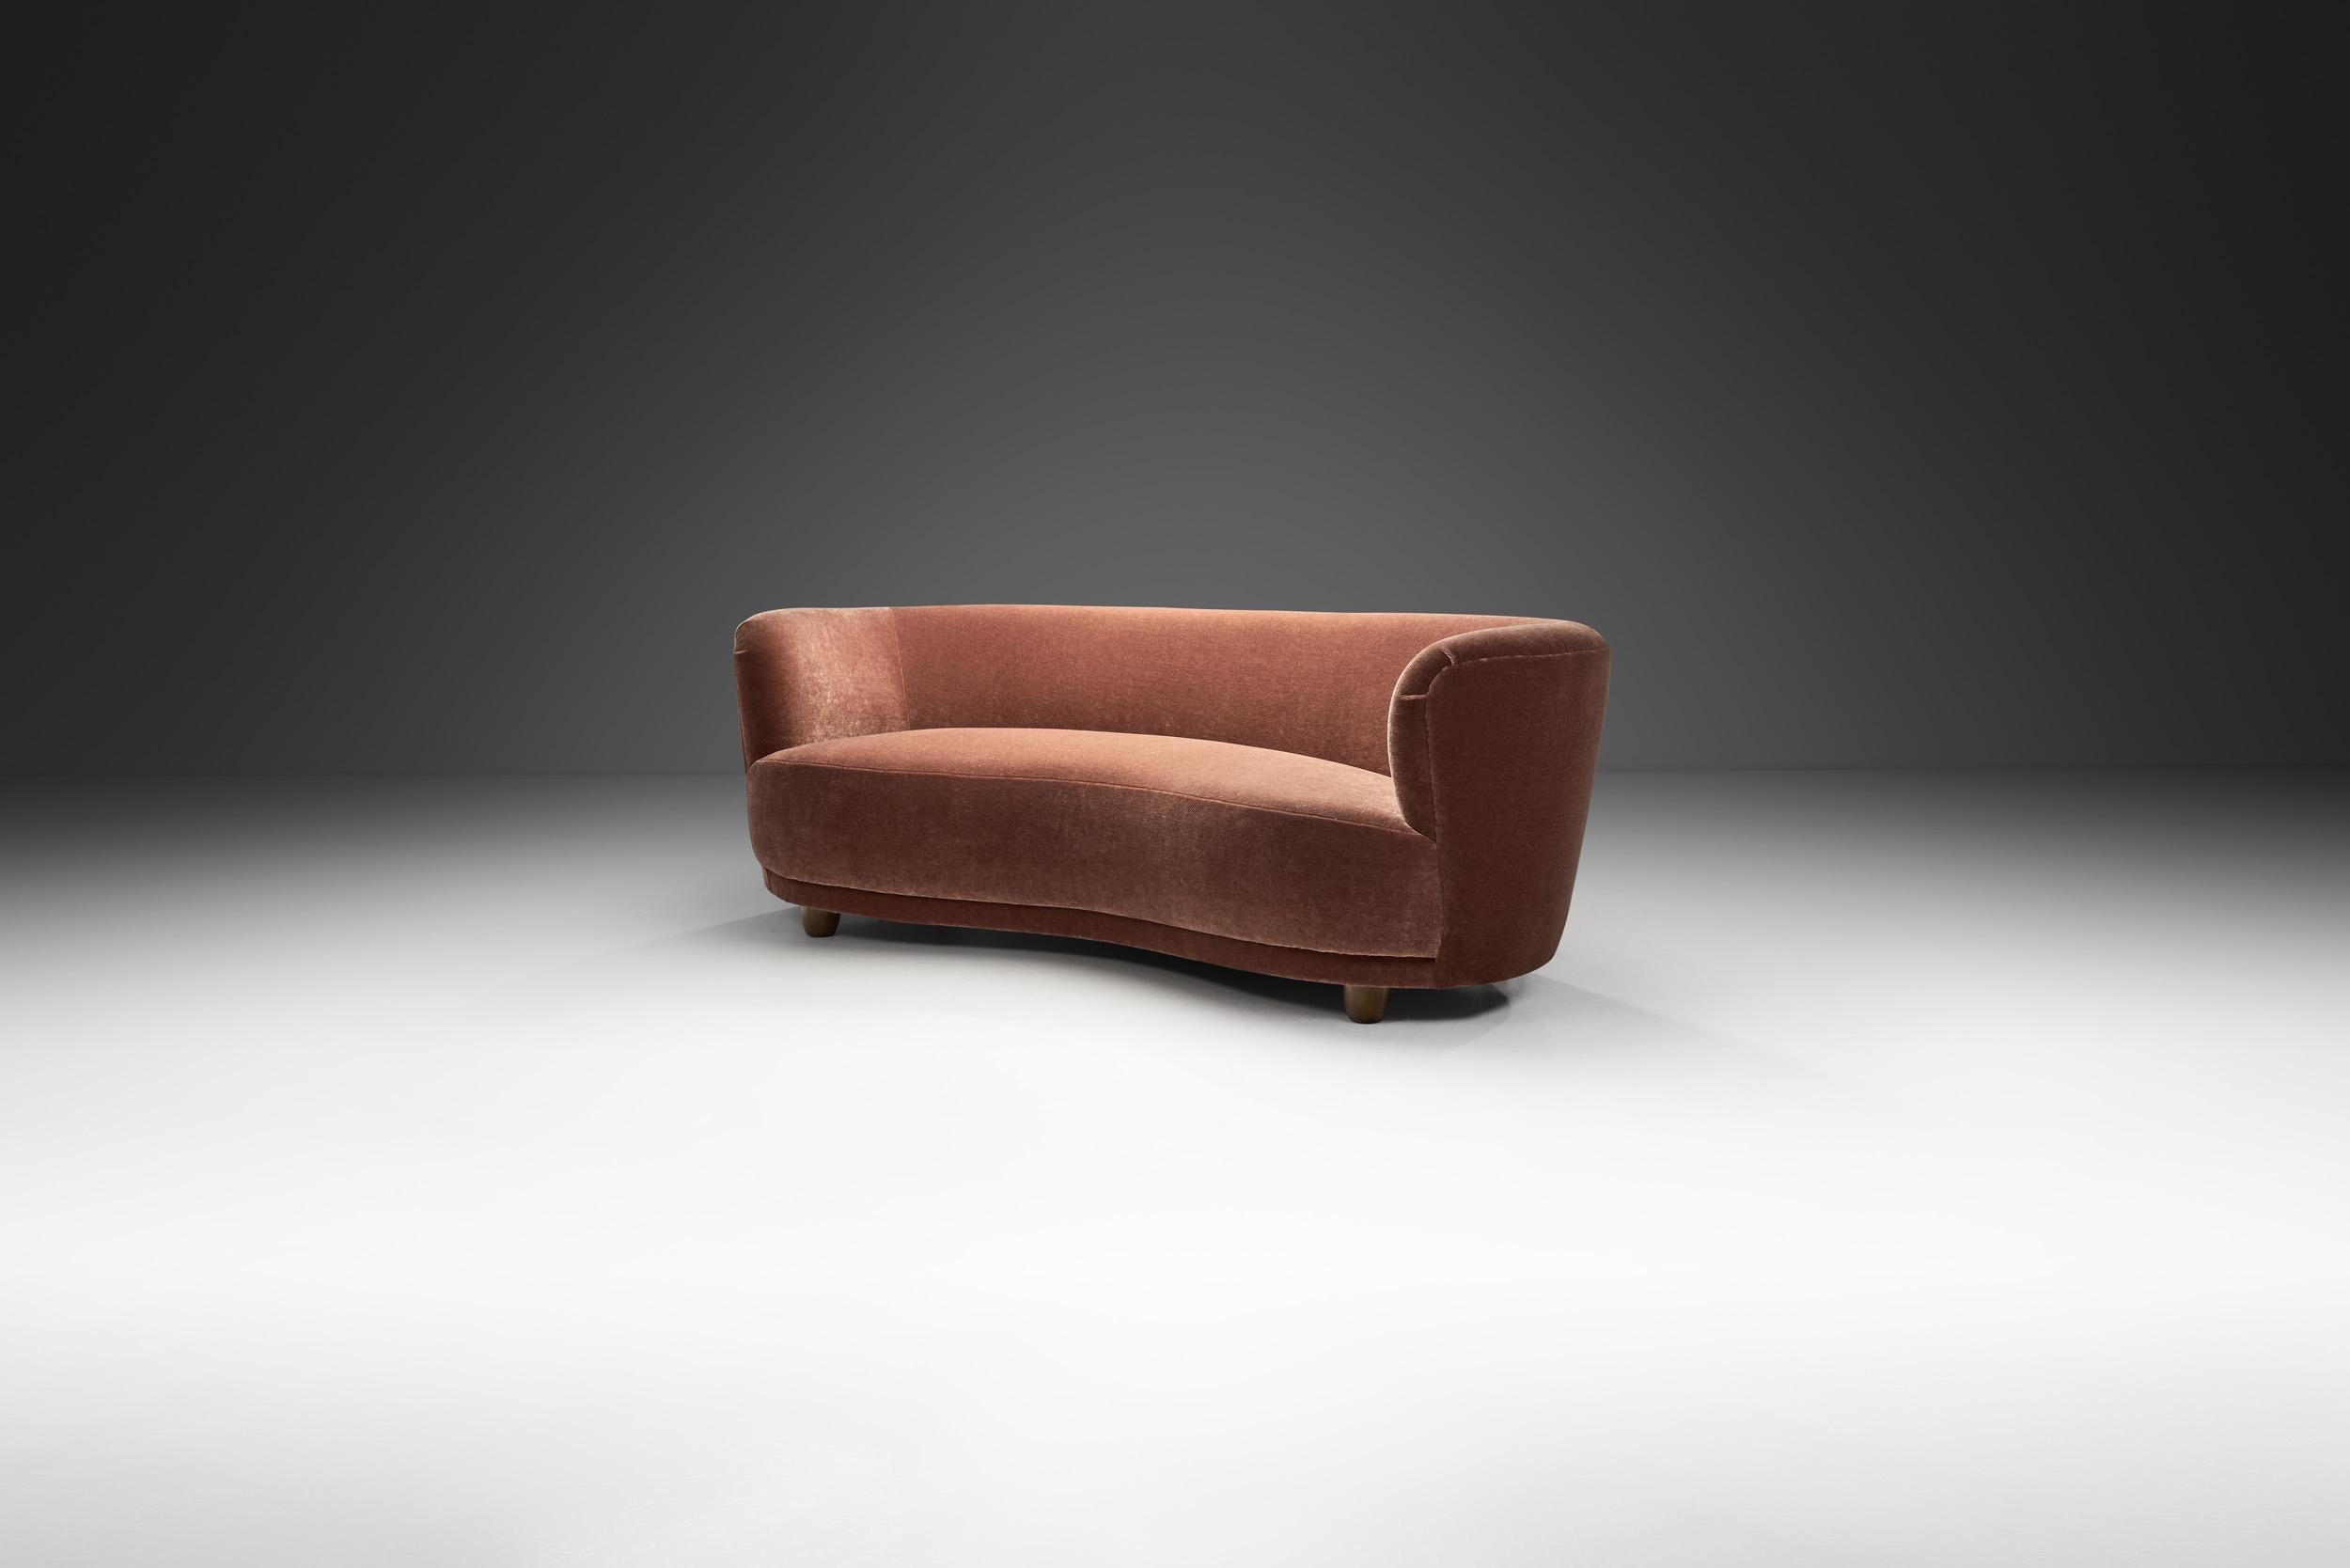 Ce magnifique canapé danois à trois places rappelle le style Art déco des années 1930 avec la touche reconnaissable du modernisme danois. Grâce à sa forme élégamment incurvée, ce type de canapé est souvent appelé le style 